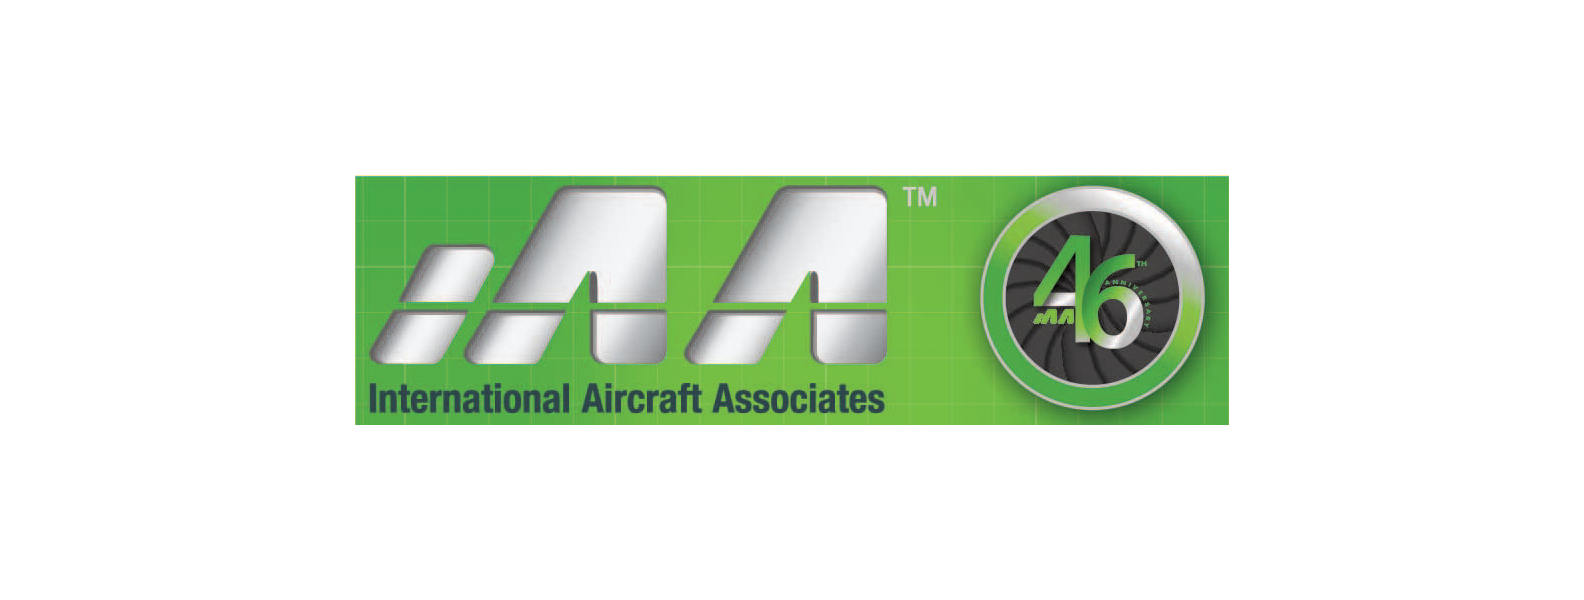 International Aircraft Associates